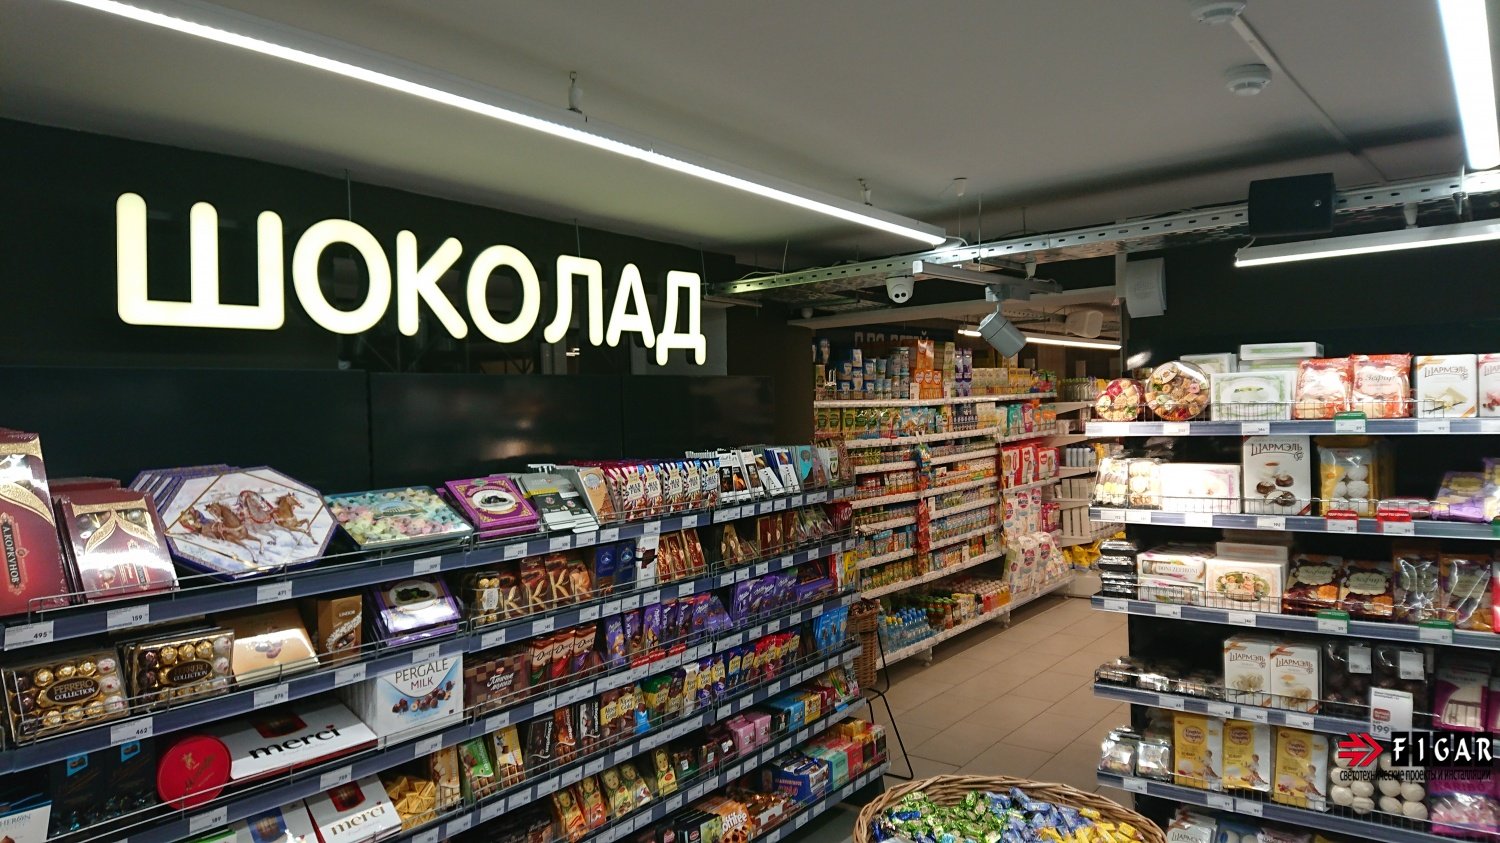 Оформление освещения в супермаркете "EUROSPAR"